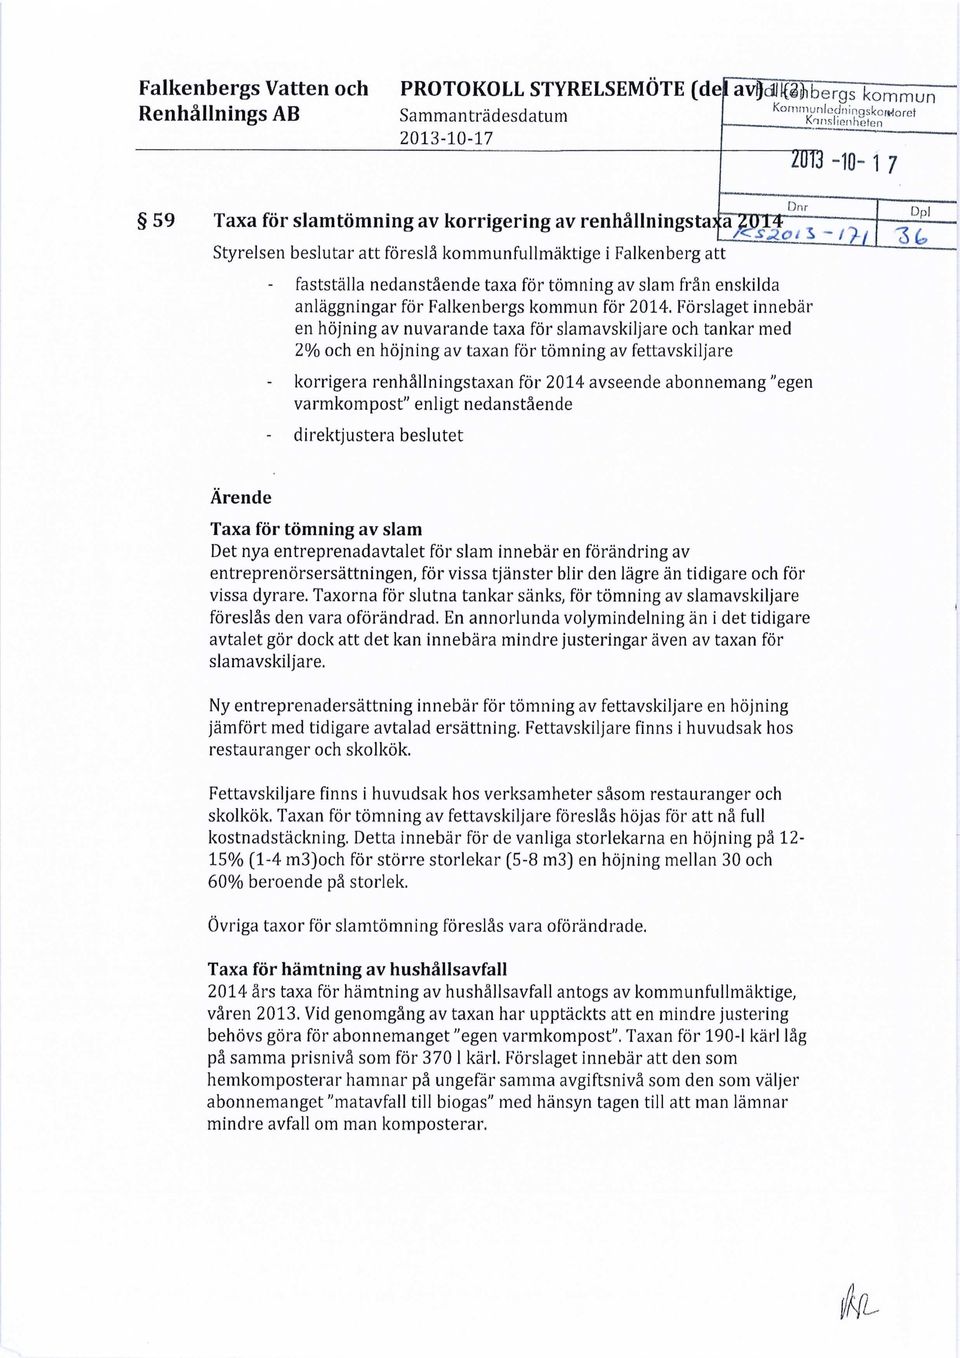 _Qi S -/>/ fastställa nedanstående taxa för tömning av slam från enskilda anläggningar för Falkenbergs kommun för 2014.